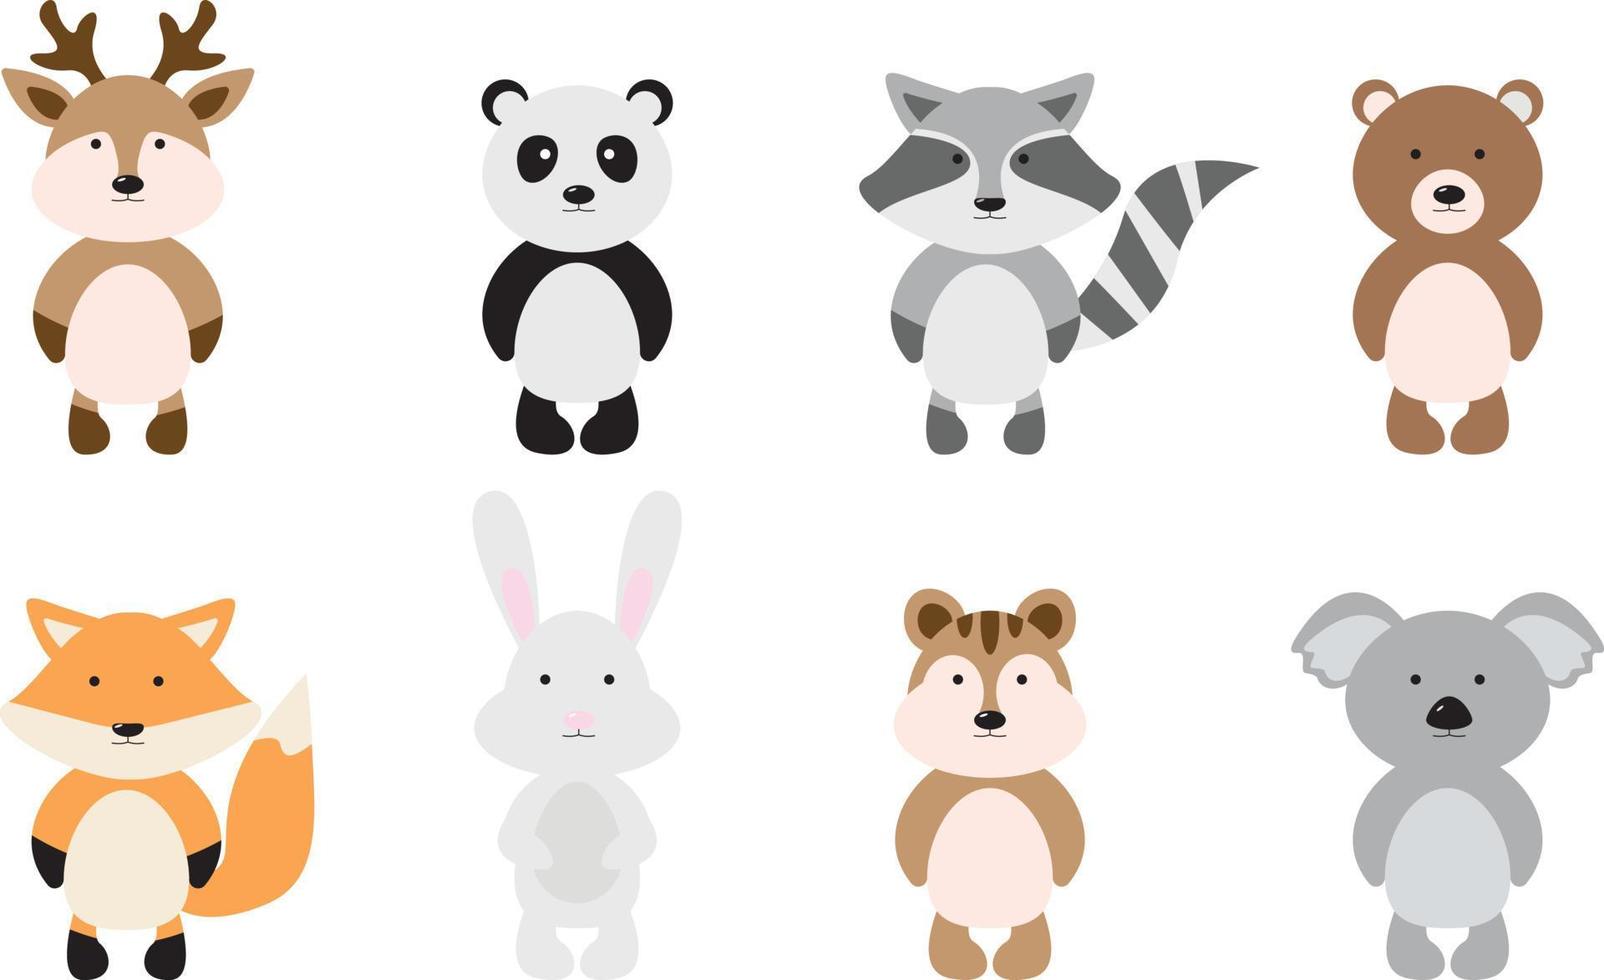 un gran conjunto de animales aislados. colección de vectores de animales divertidos. lindos animales en estilo de dibujos animados. ciervo, panda, mapache, oso, zorro, liebre, ardilla listada, coala